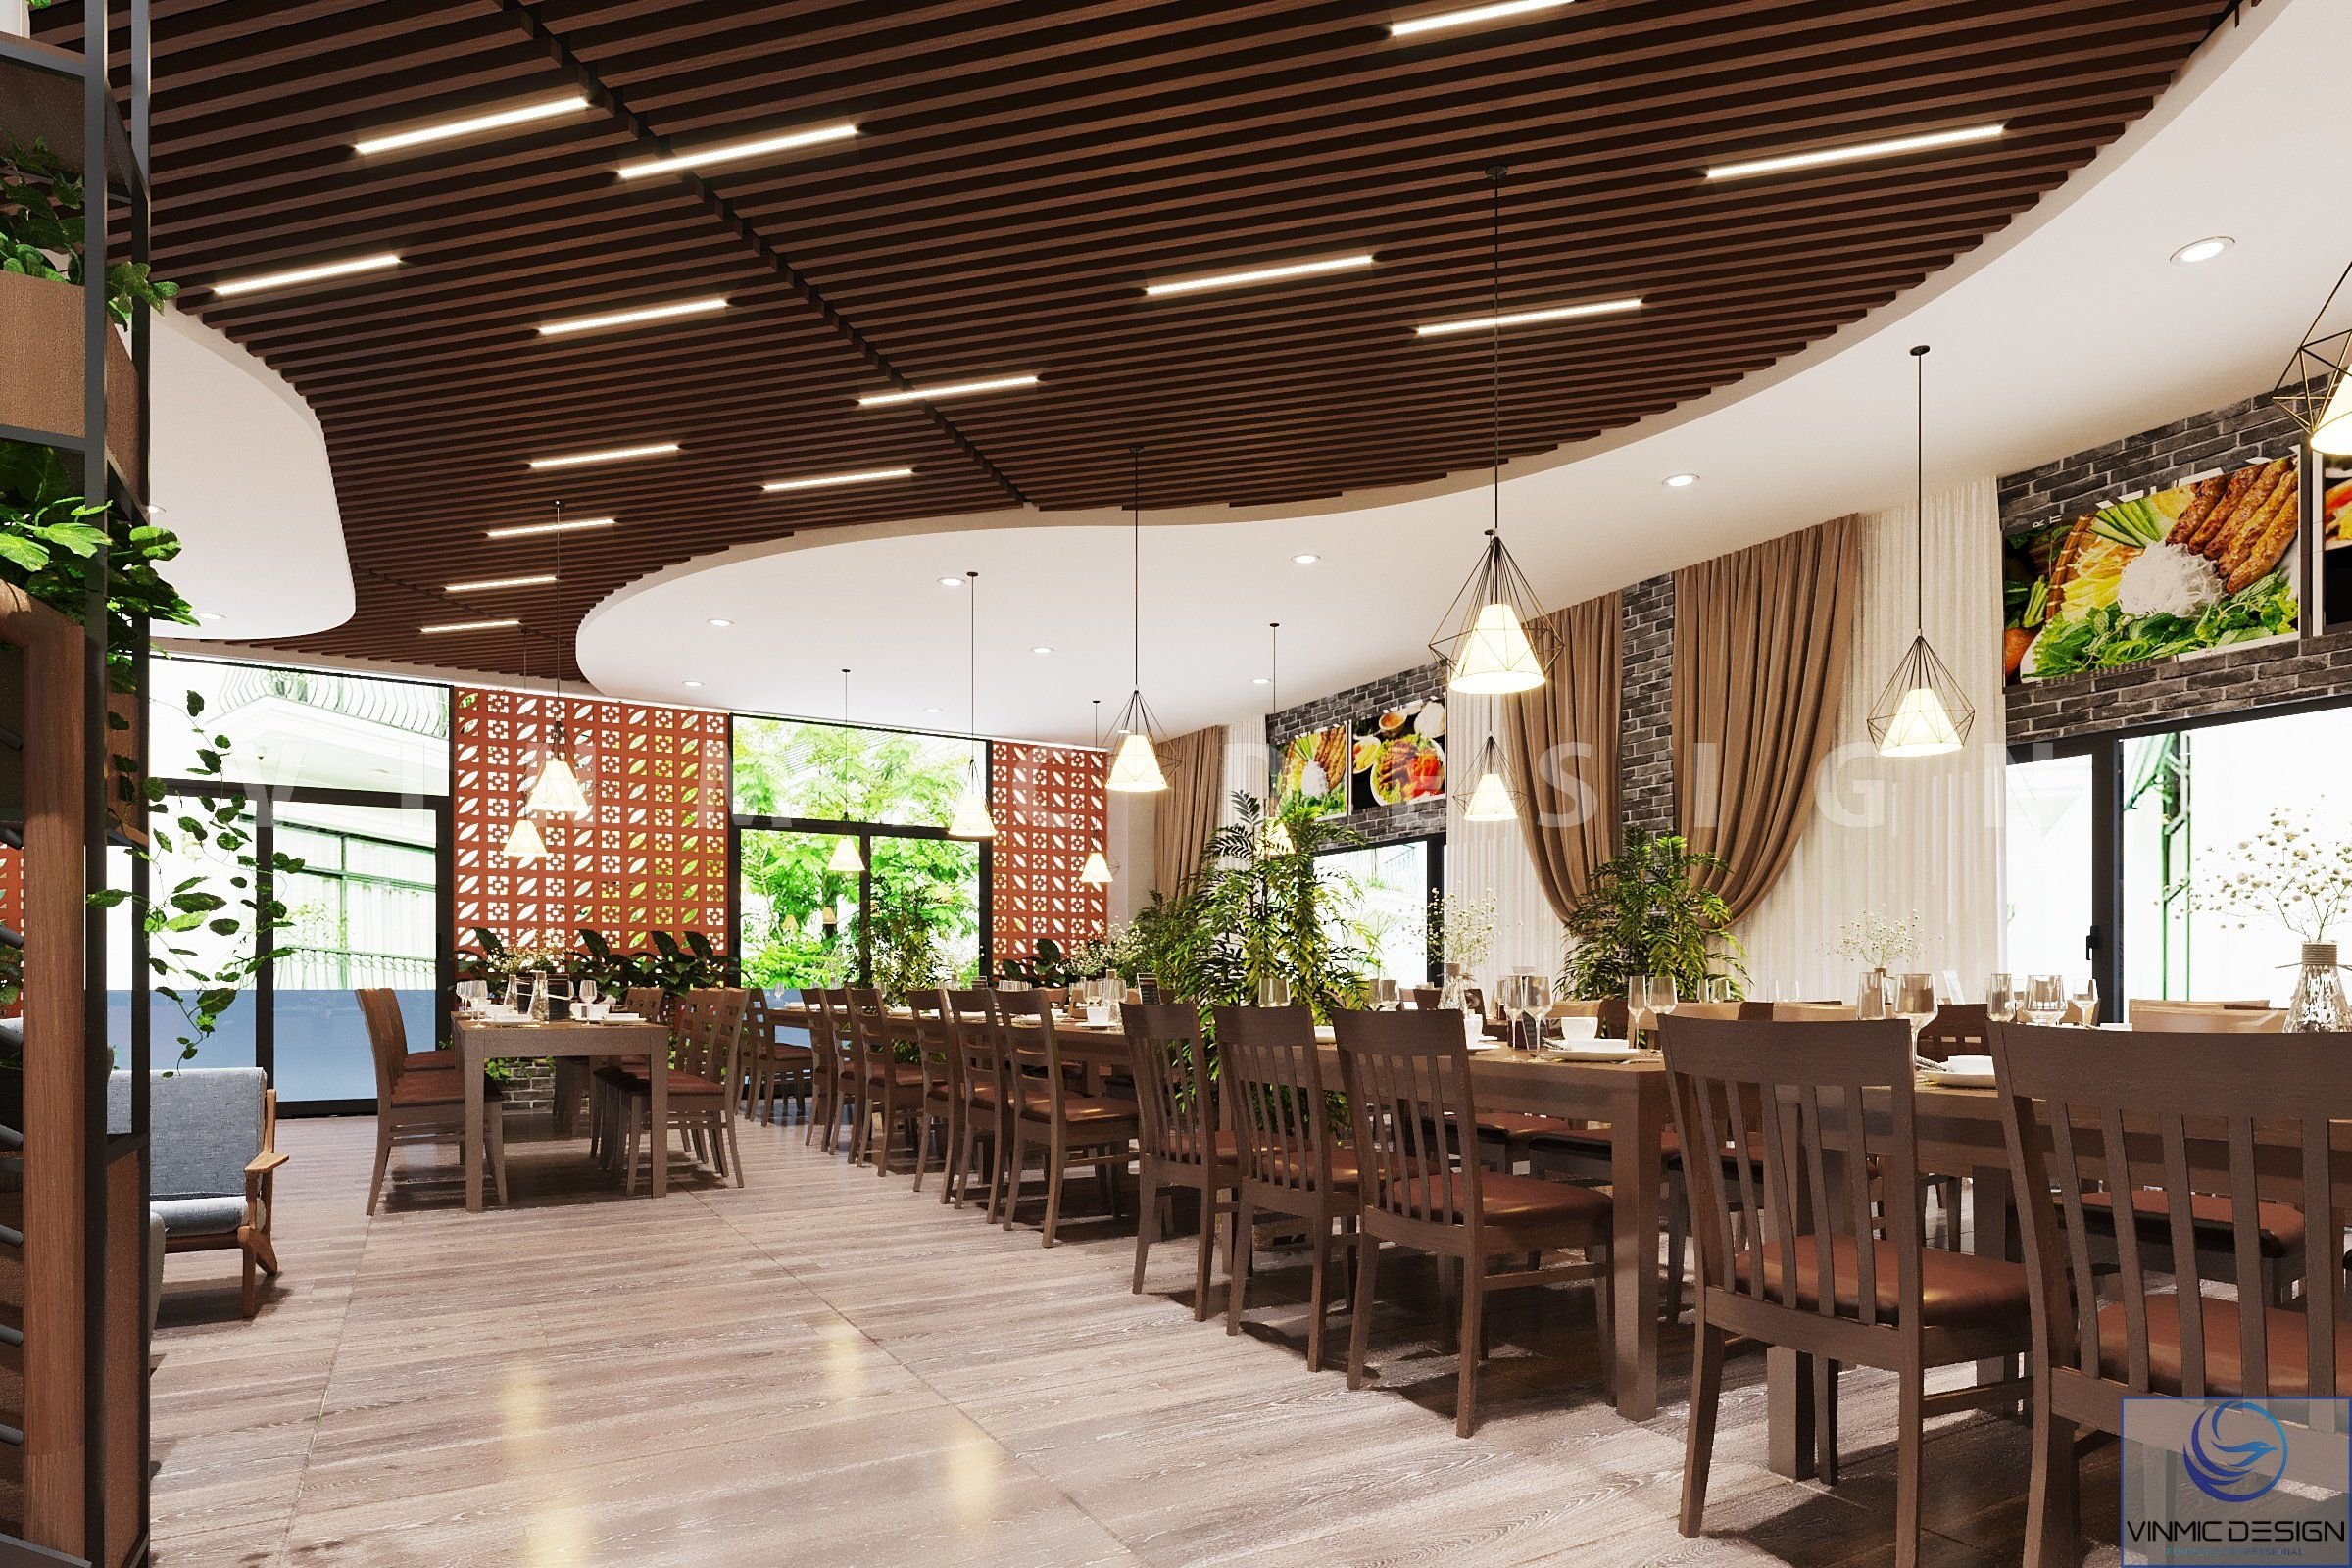 Trần ốp gỗ thanh hòa hợp với không gian nhà hàng mộc mạc 